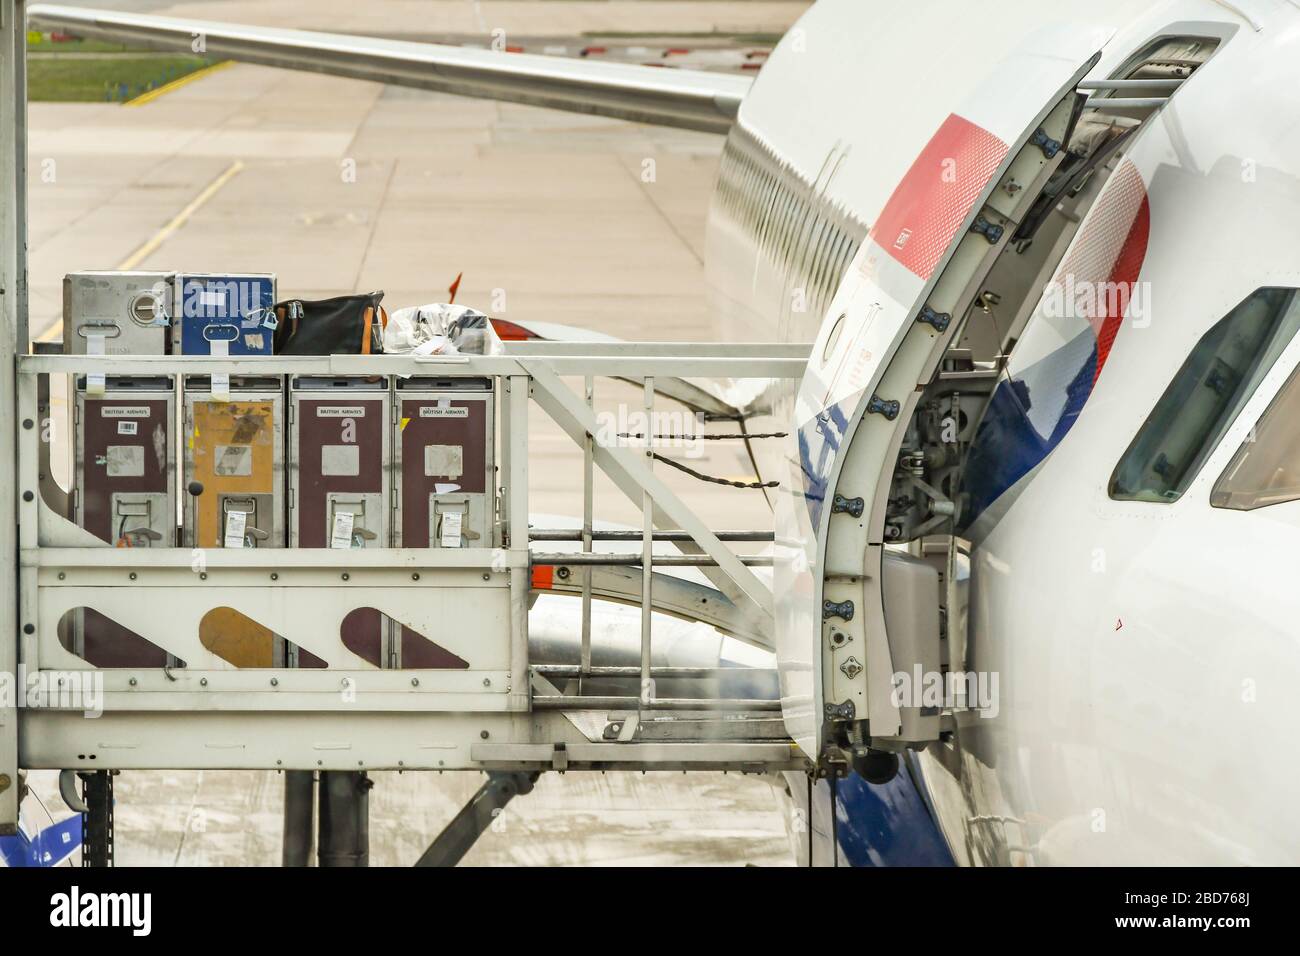 FLUGHAFEN LONDON-GATWICK, ENGLAND - APRIL 2019: Catering-Transportwagen für Flüge, die auf einem Airbus-Jet von British Airways am Flughafen London-Gatwick geladen werden können Stockfoto